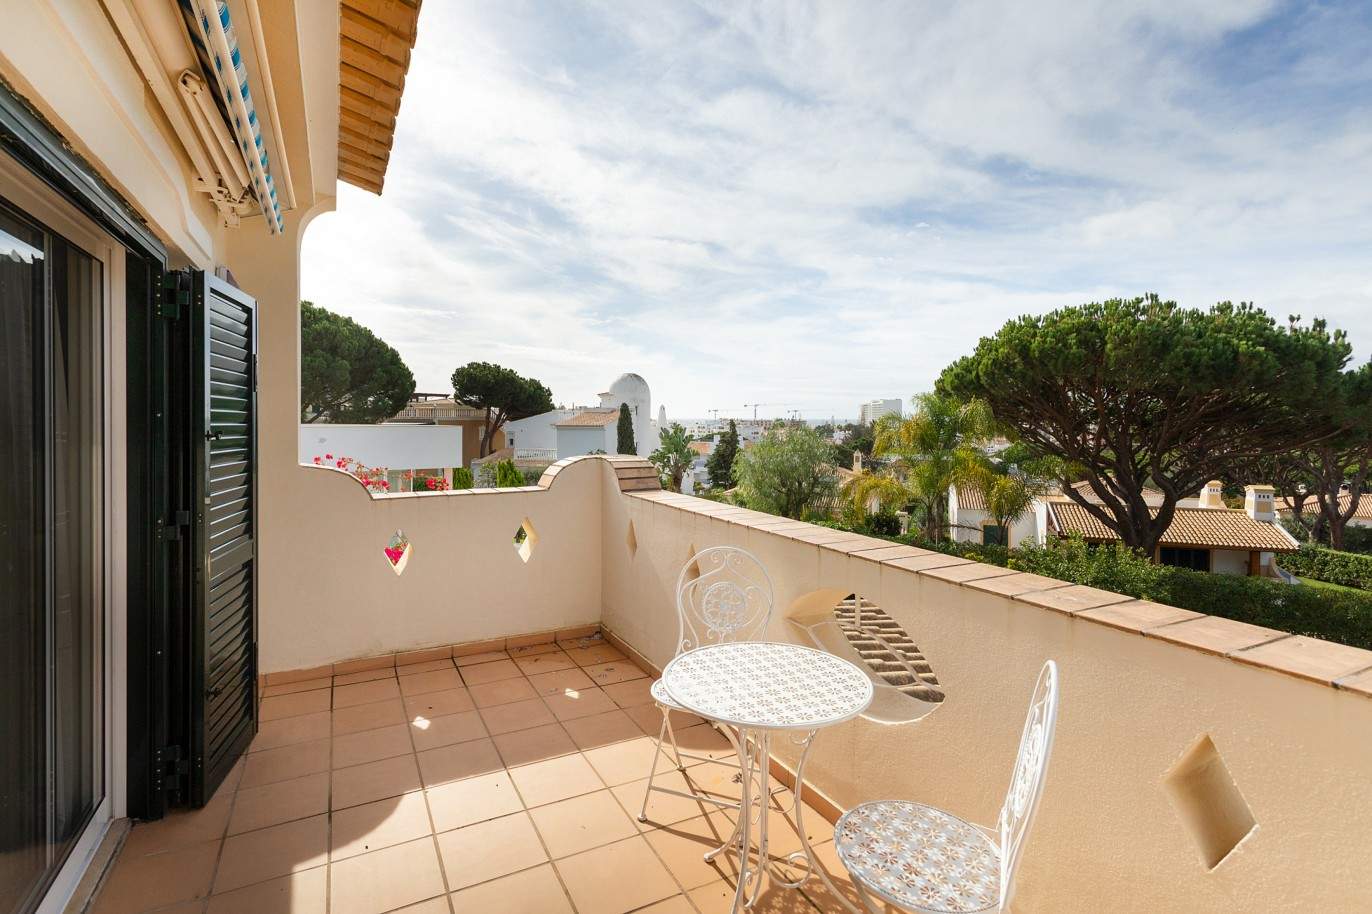 5 Bedroom Villa with swimming pool, for sale in Vilamoura, Algarve_212564